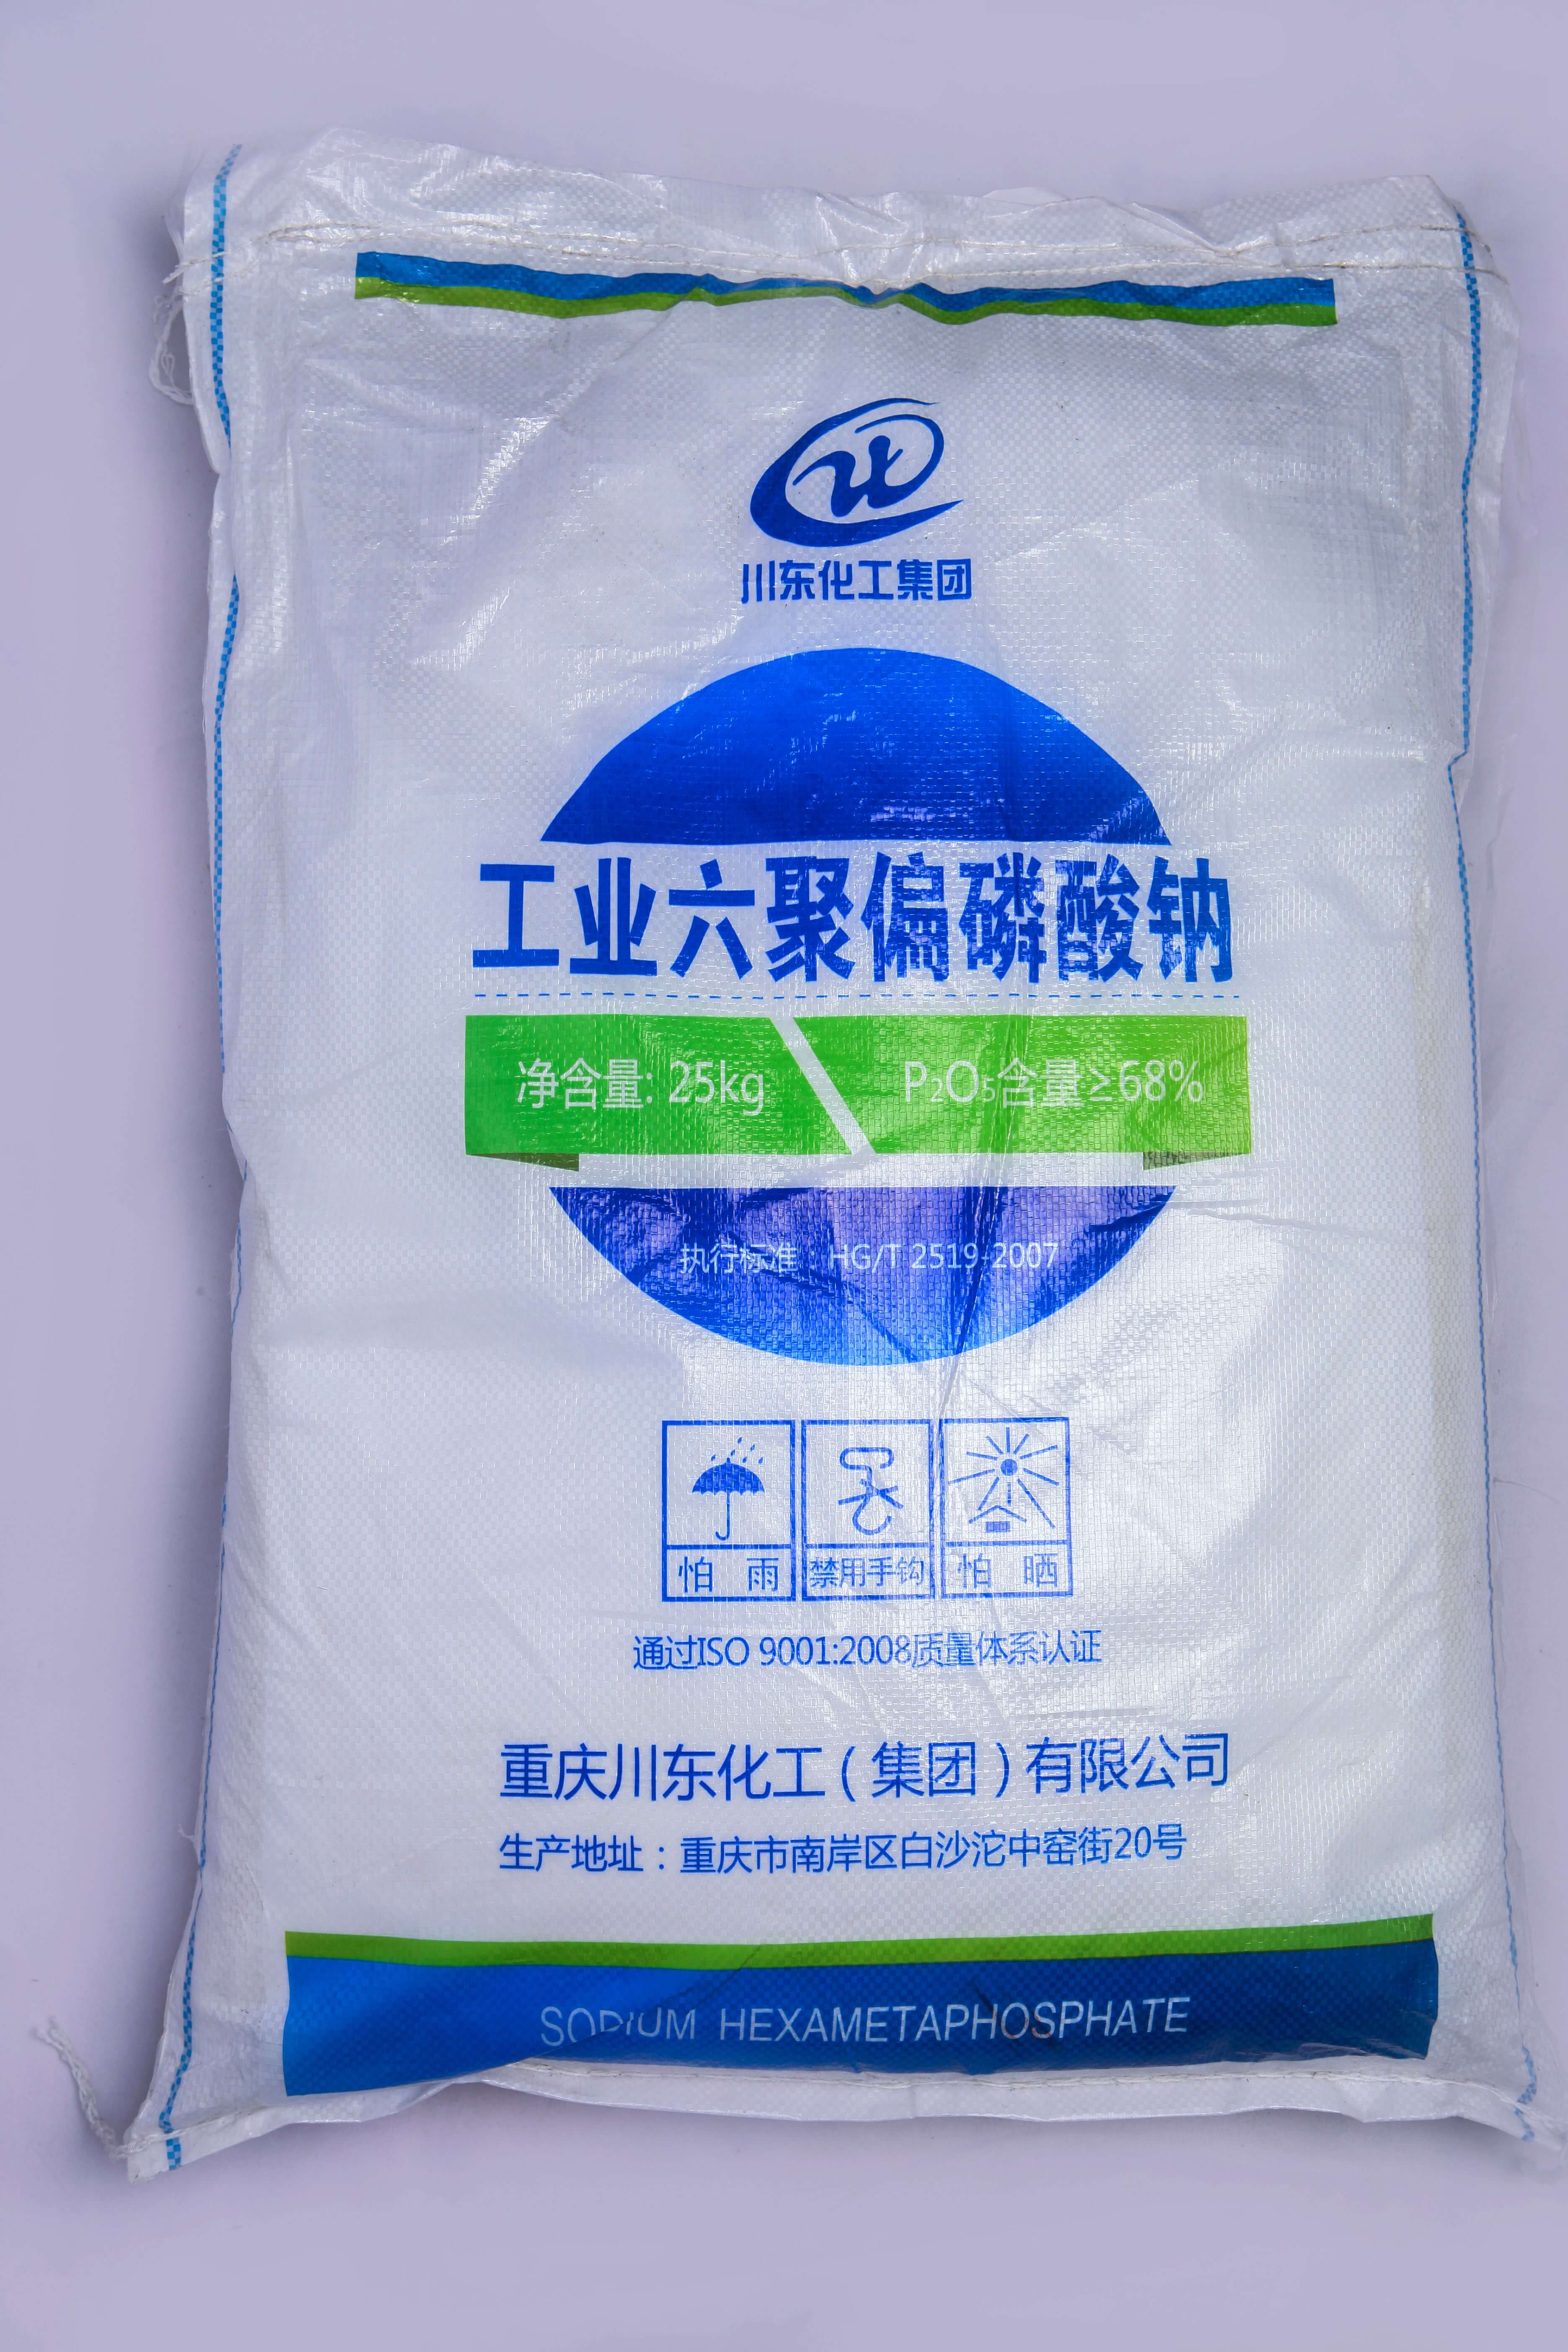 佛山三聚磷酸鈉代理商認為黃磷價格的持續上漲，主要受幾個方面的因素影響